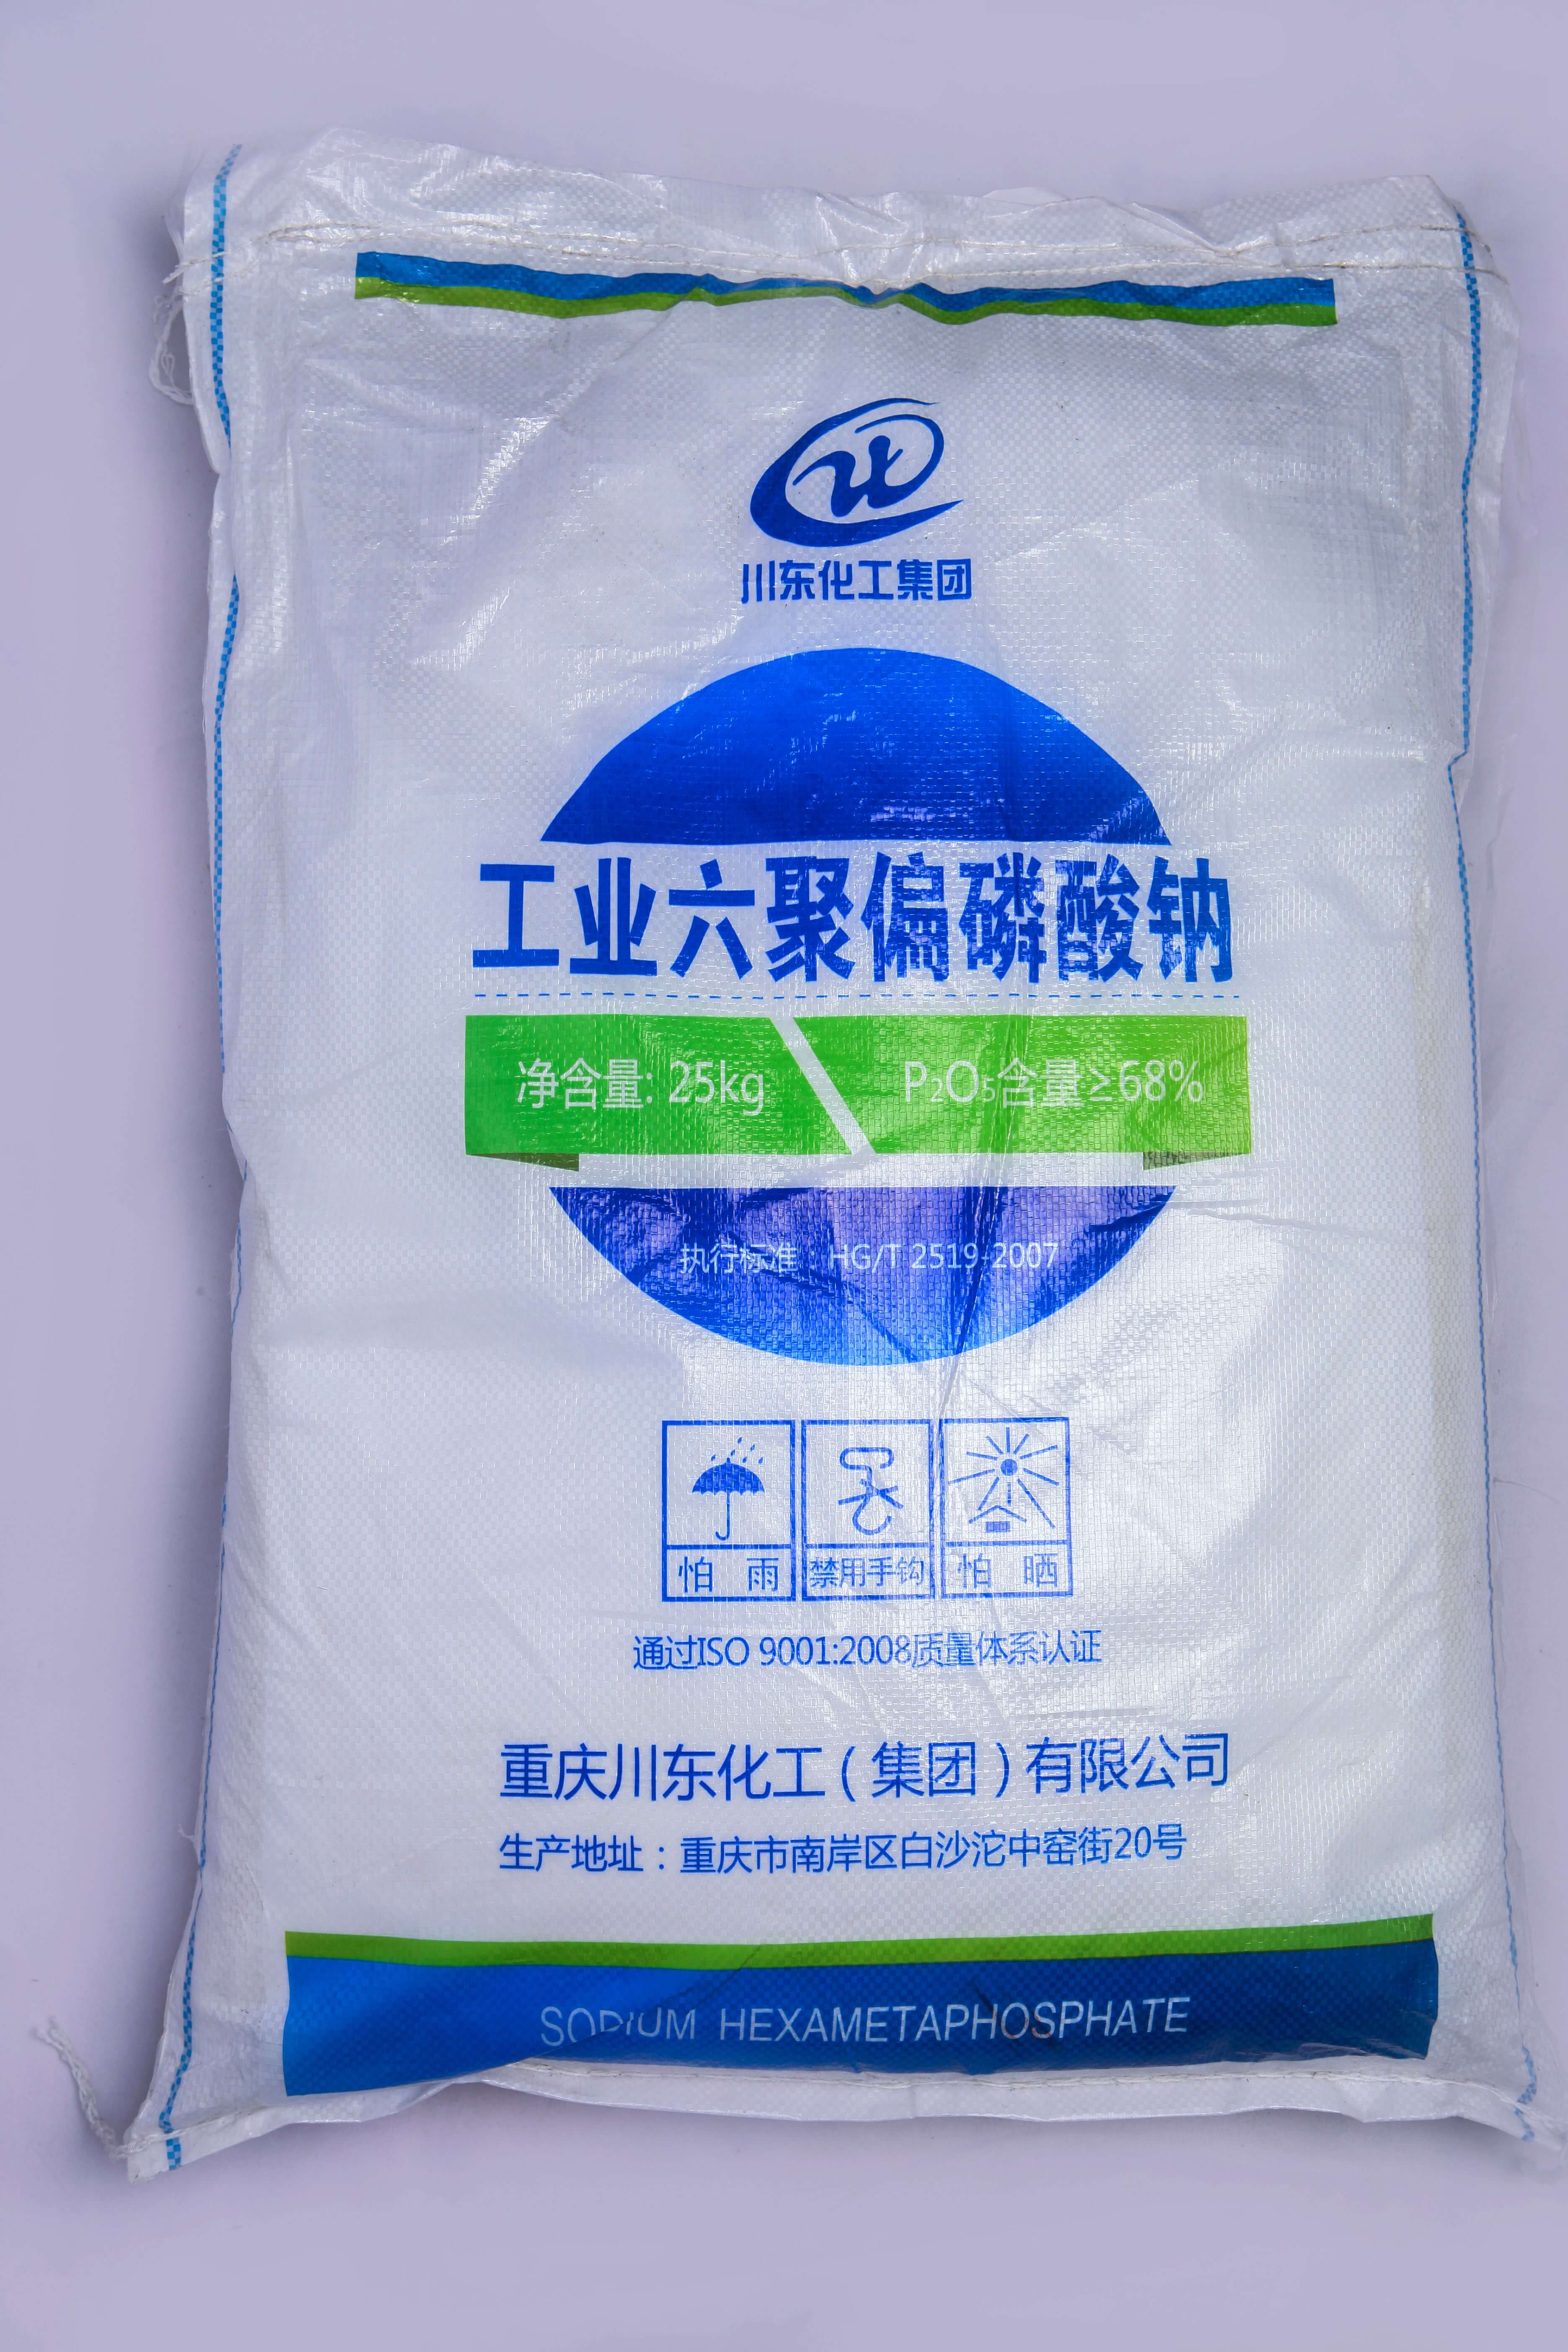 佛山三聚磷酸鈉代理商認為黃磷價格的持續上漲，主要受幾個方面的因素影響